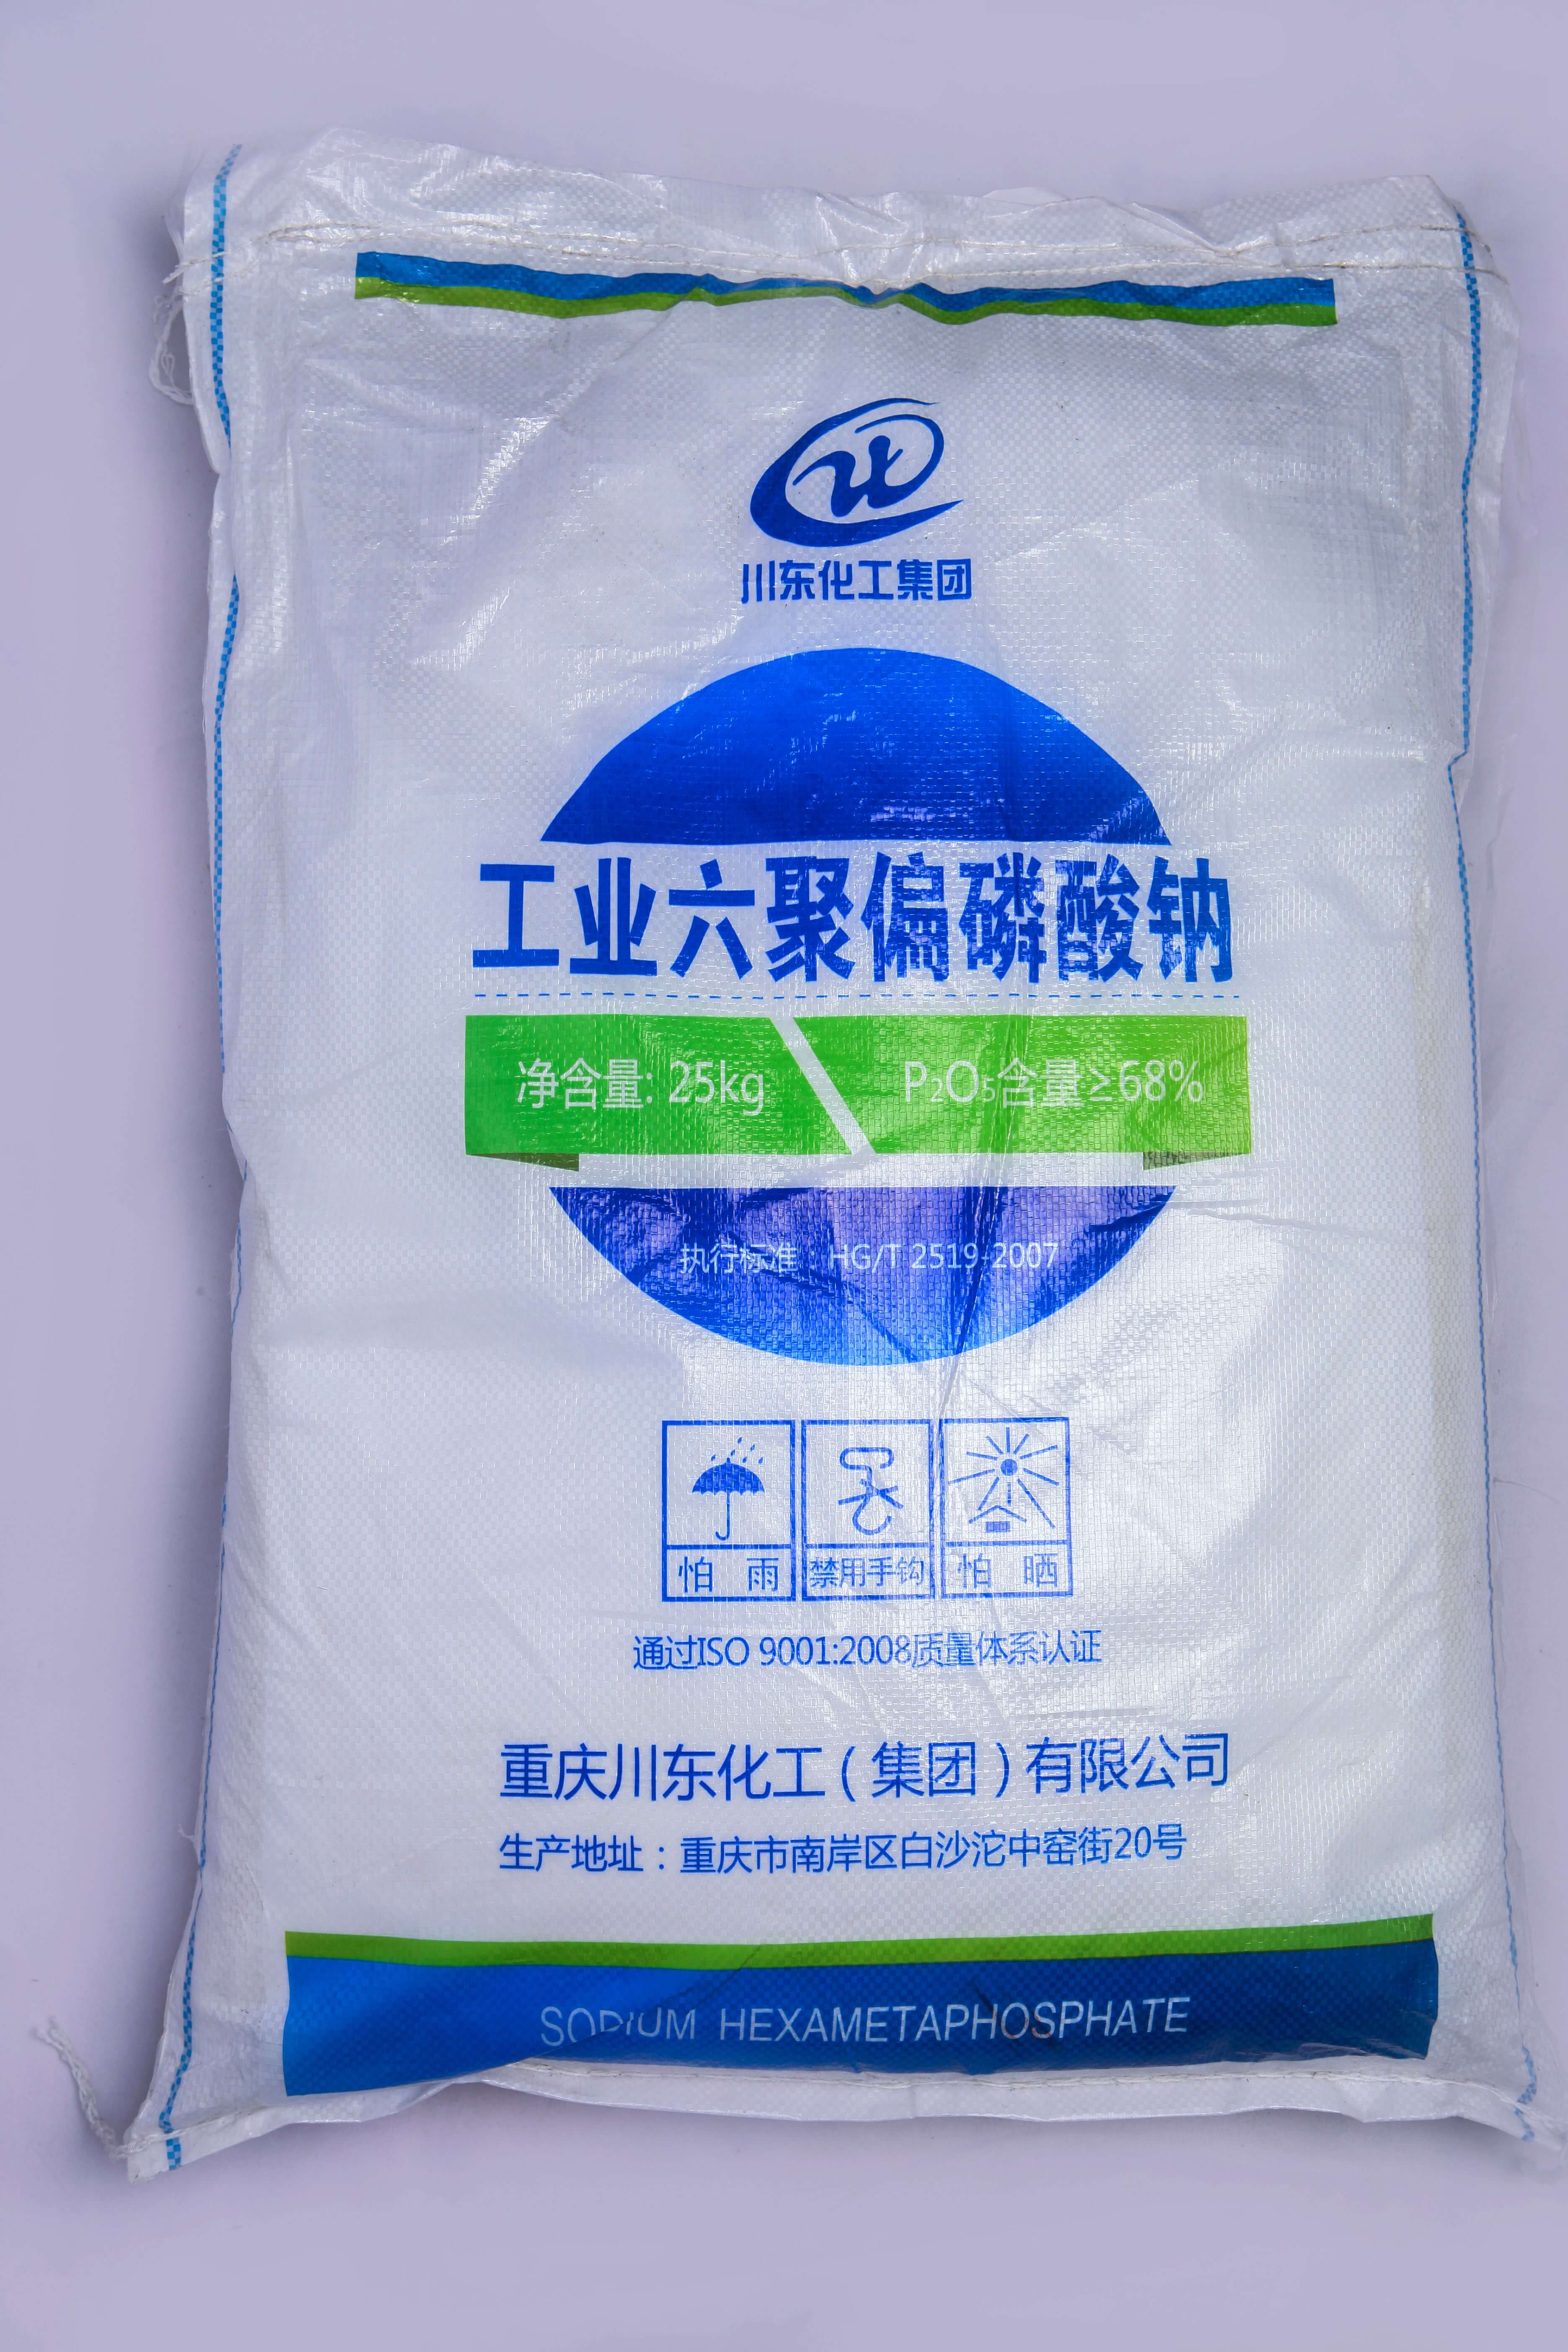 佛山三聚磷酸鈉代理商認為黃磷價格的持續上漲，主要受幾個方面的因素影響